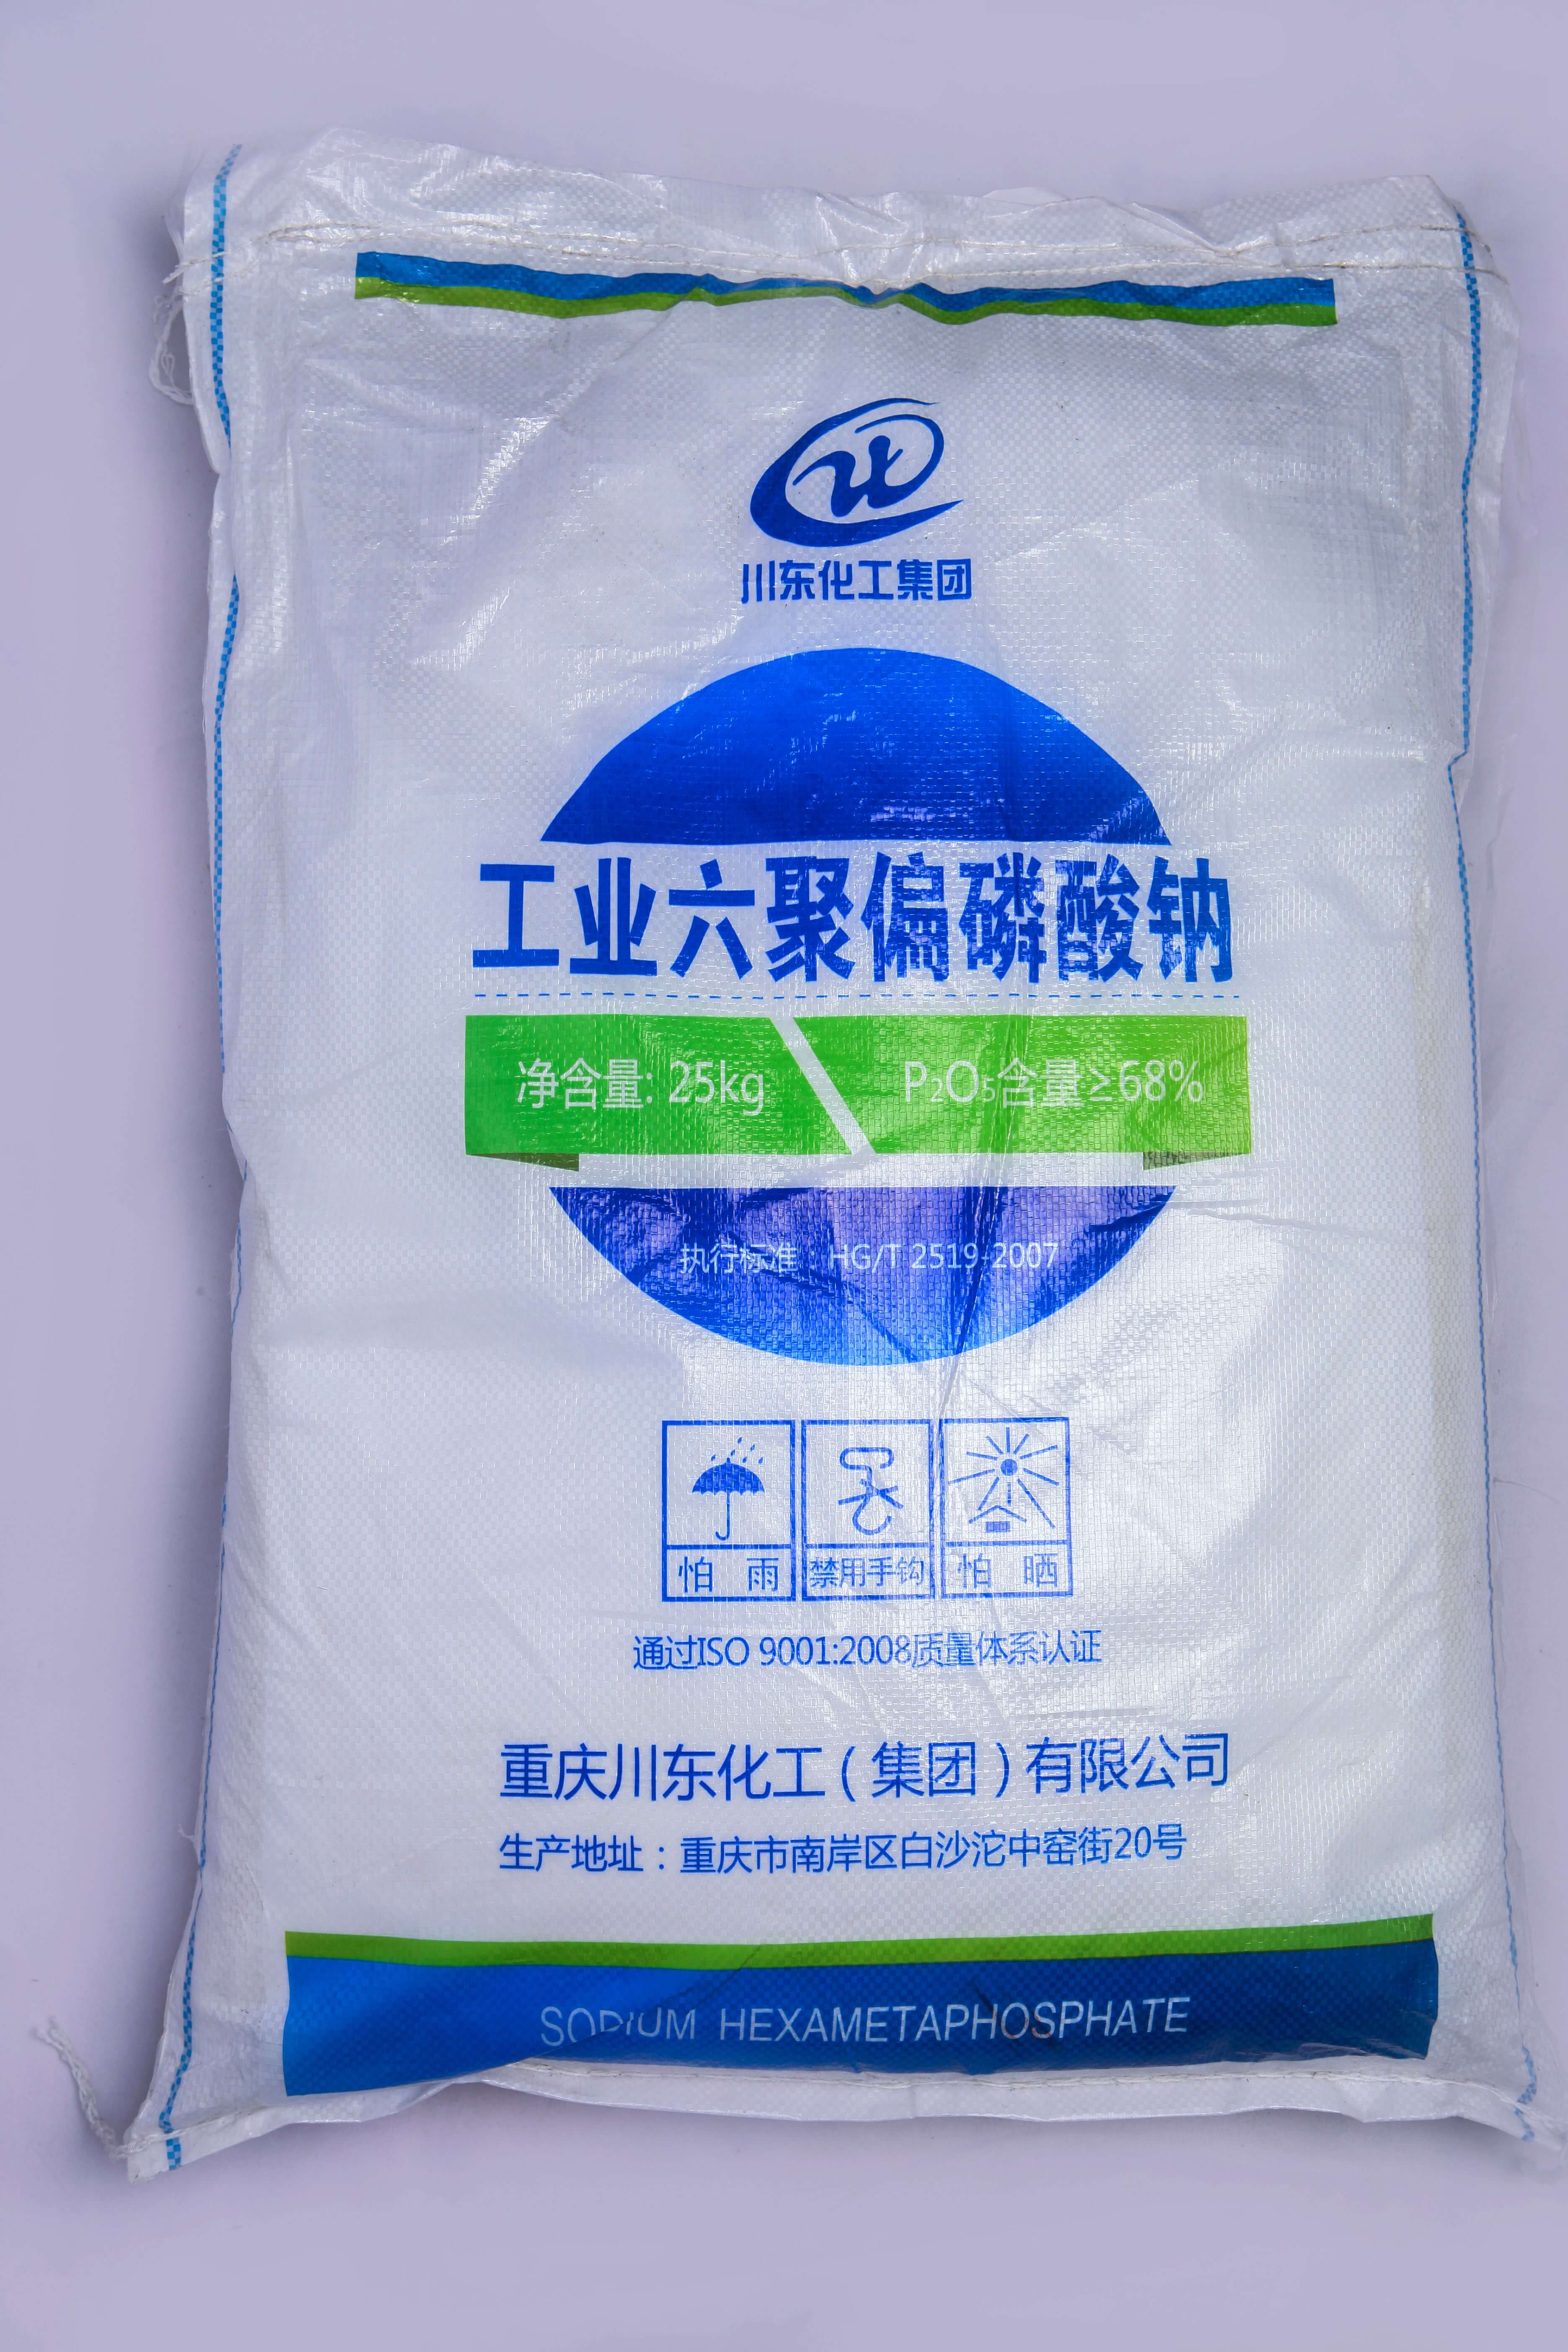 佛山三聚磷酸鈉代理商認為黃磷價格的持續上漲，主要受幾個方面的因素影響